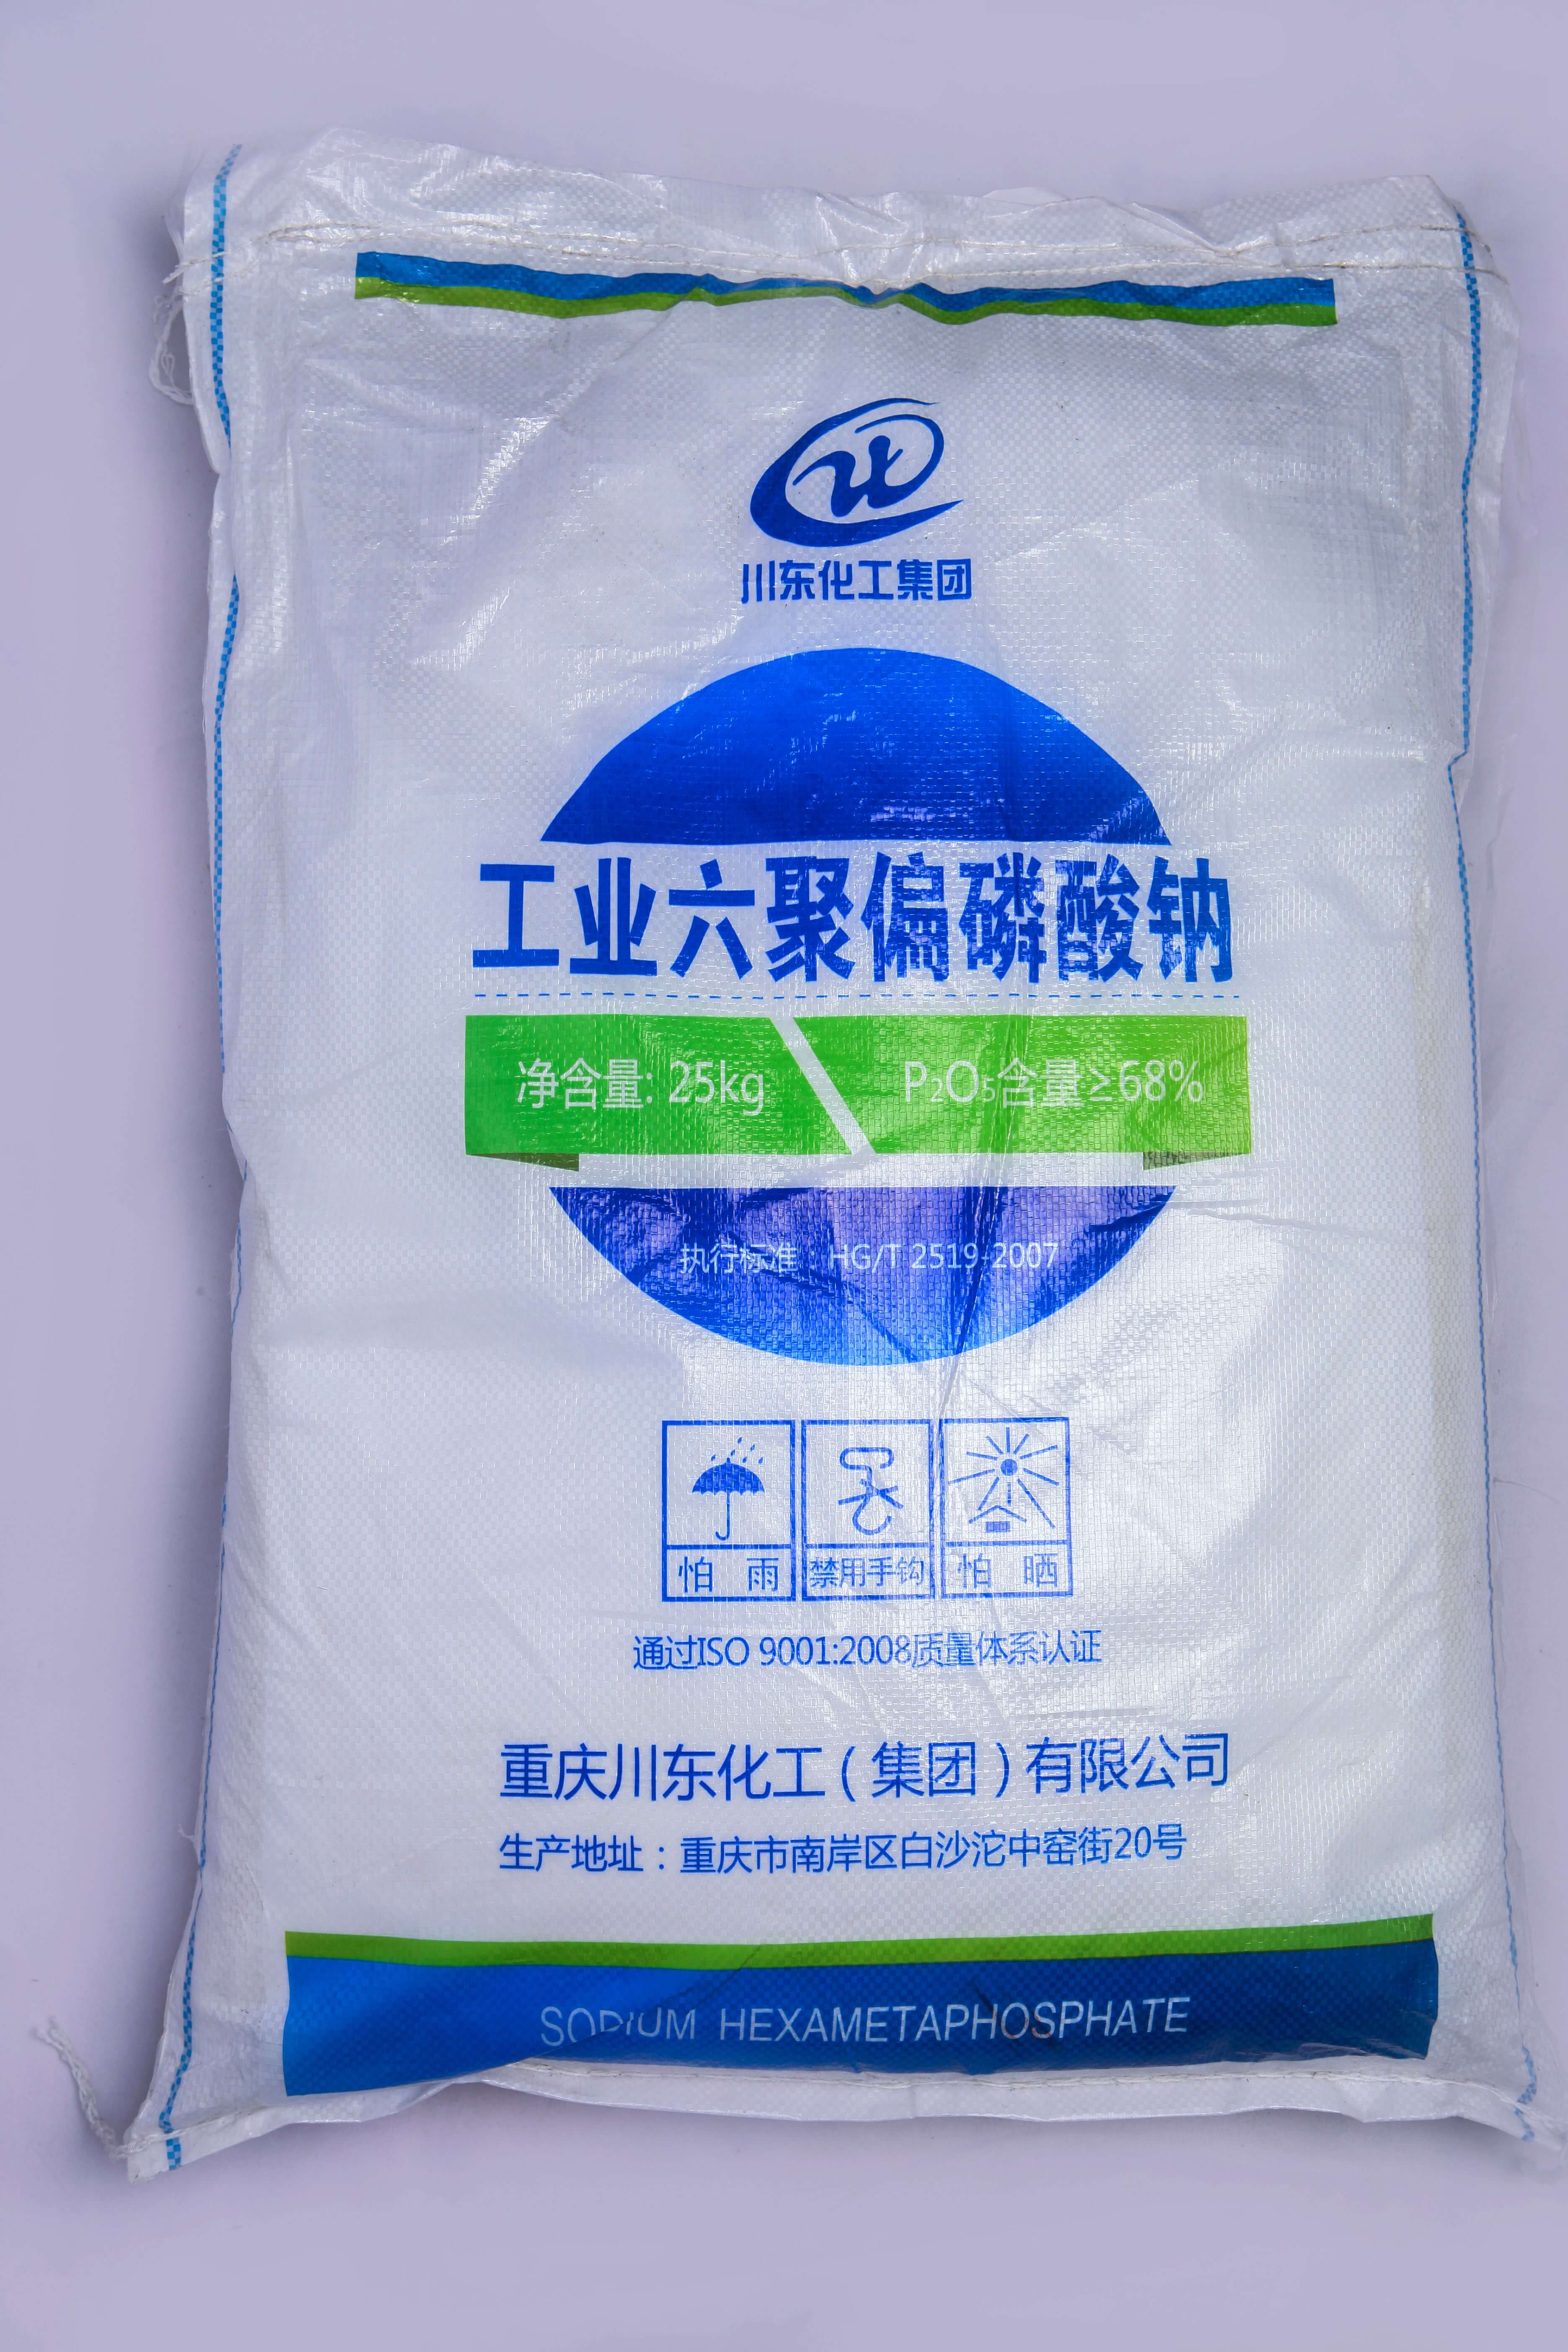 佛山三聚磷酸鈉代理商認為黃磷價格的持續上漲，主要受幾個方面的因素影響